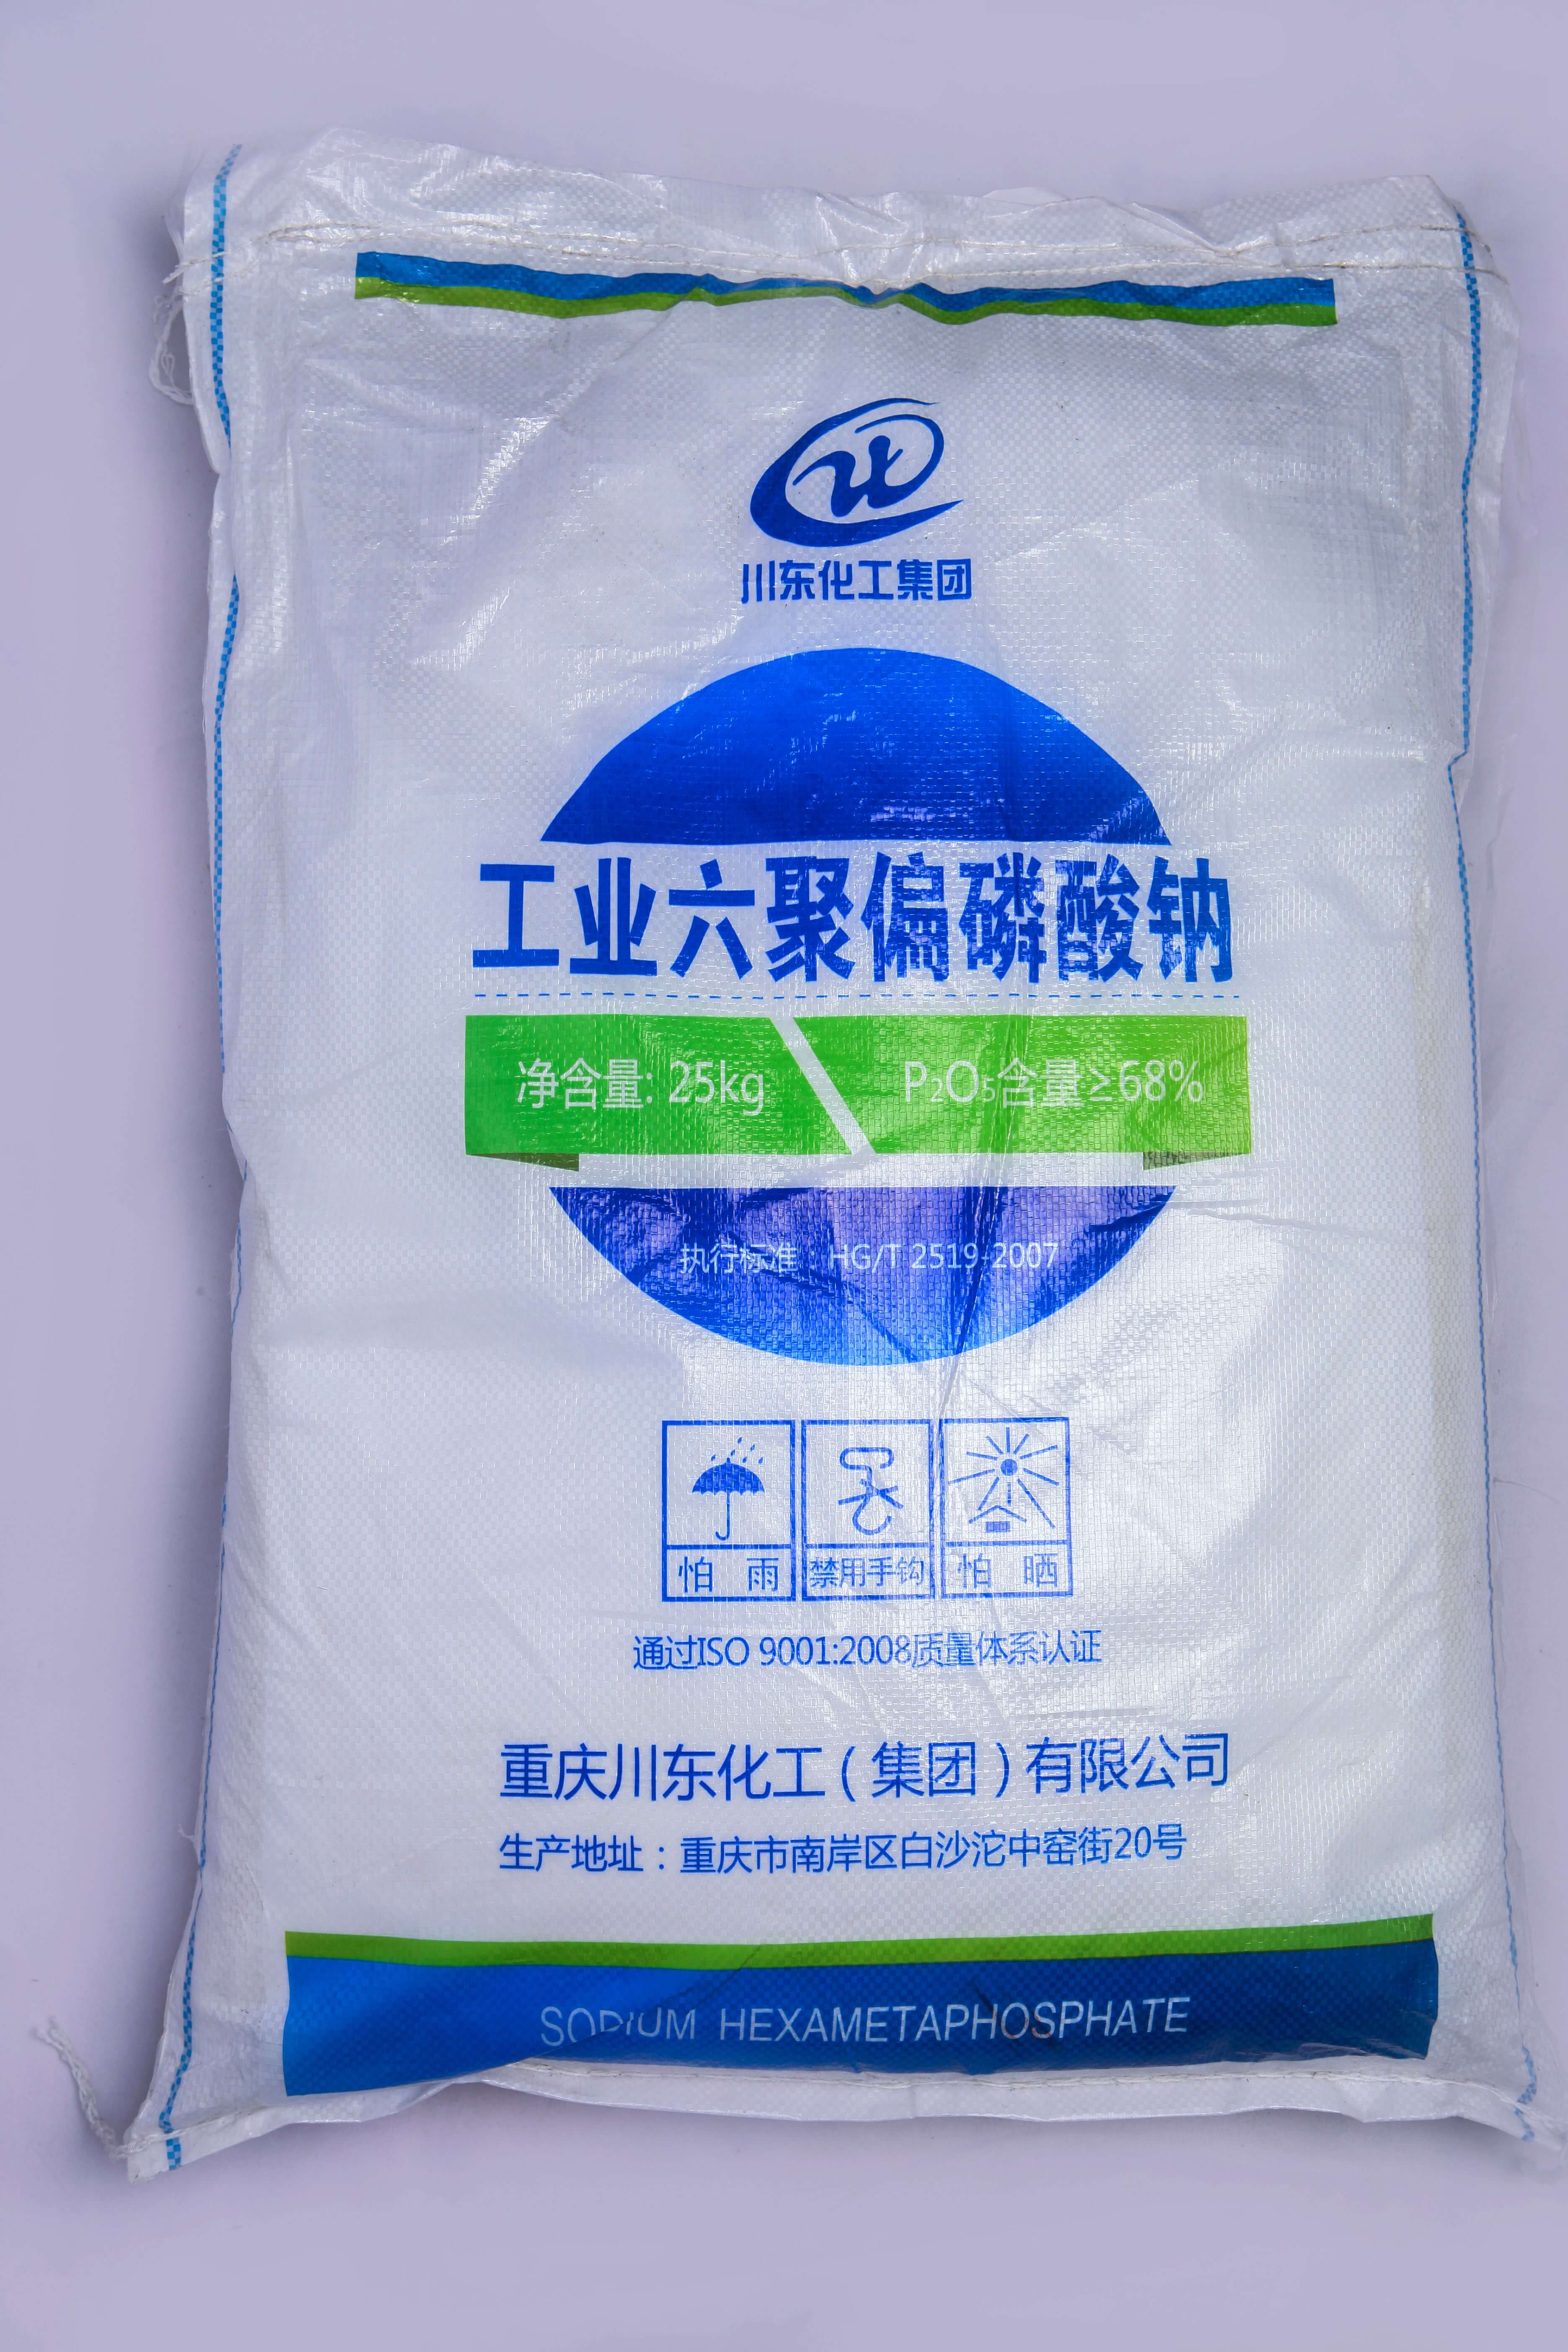 佛山三聚磷酸鈉代理商認為黃磷價格的持續上漲，主要受幾個方面的因素影響